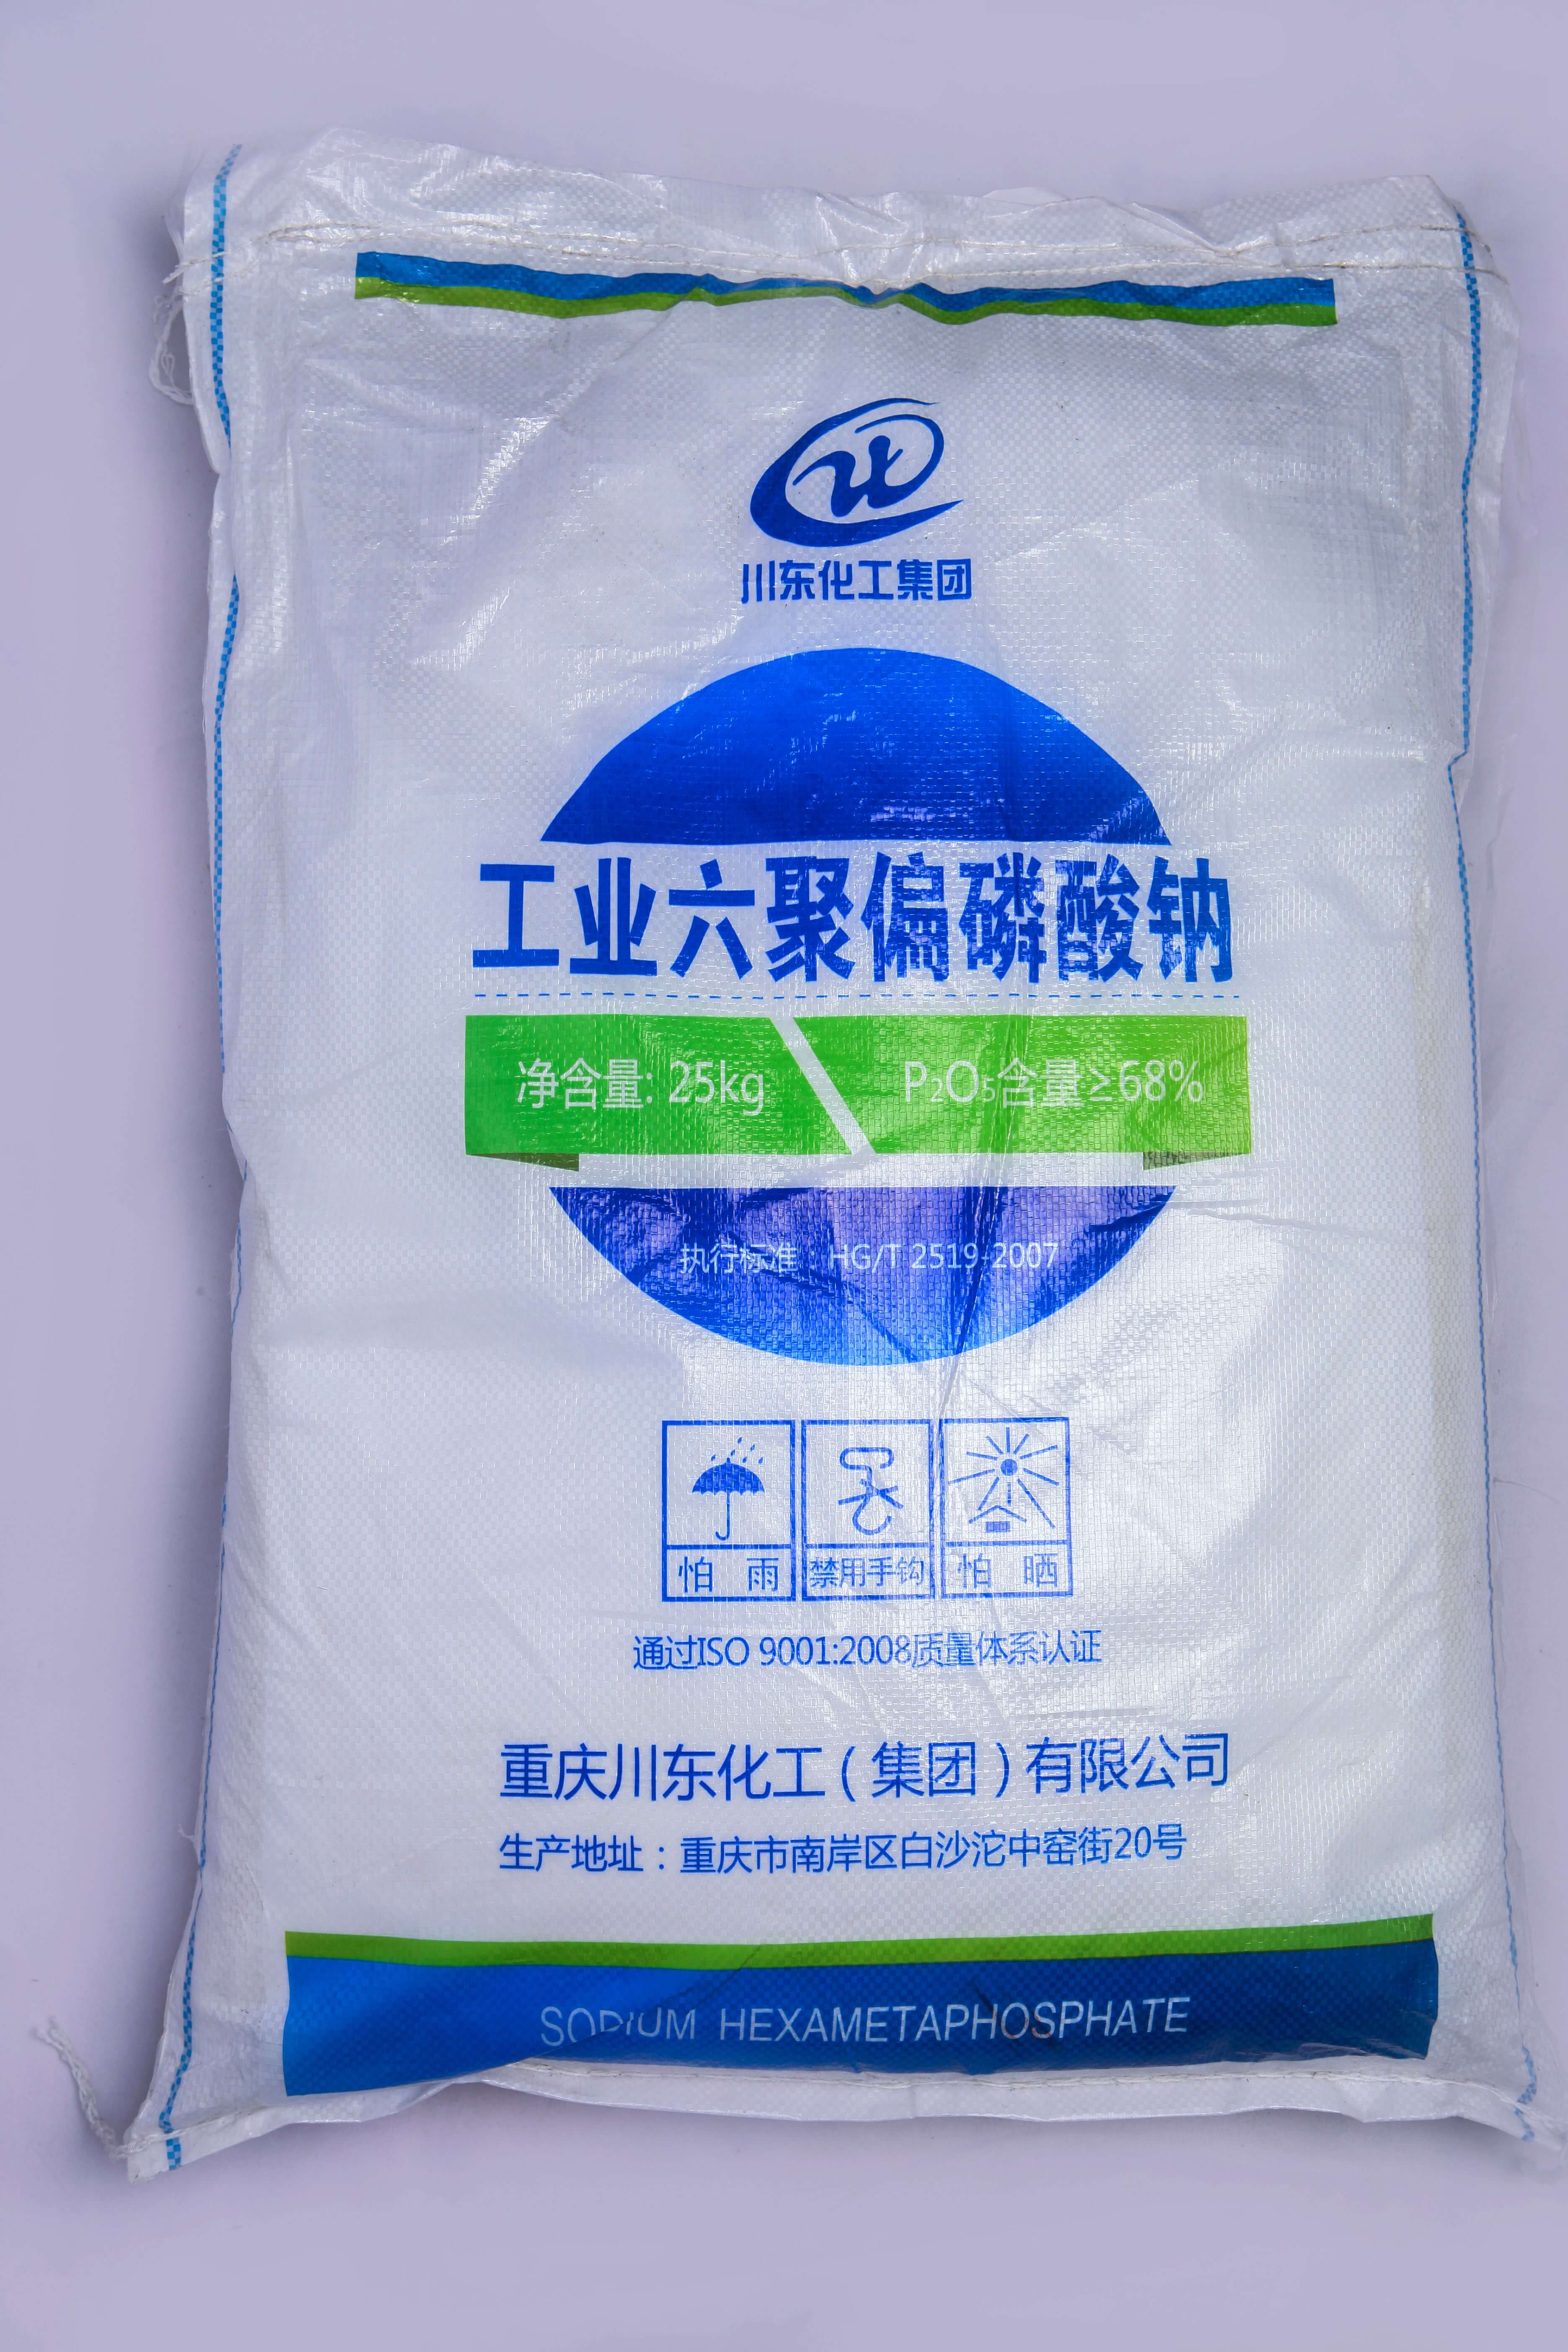 佛山三聚磷酸鈉代理商認為黃磷價格的持續上漲，主要受幾個方面的因素影響